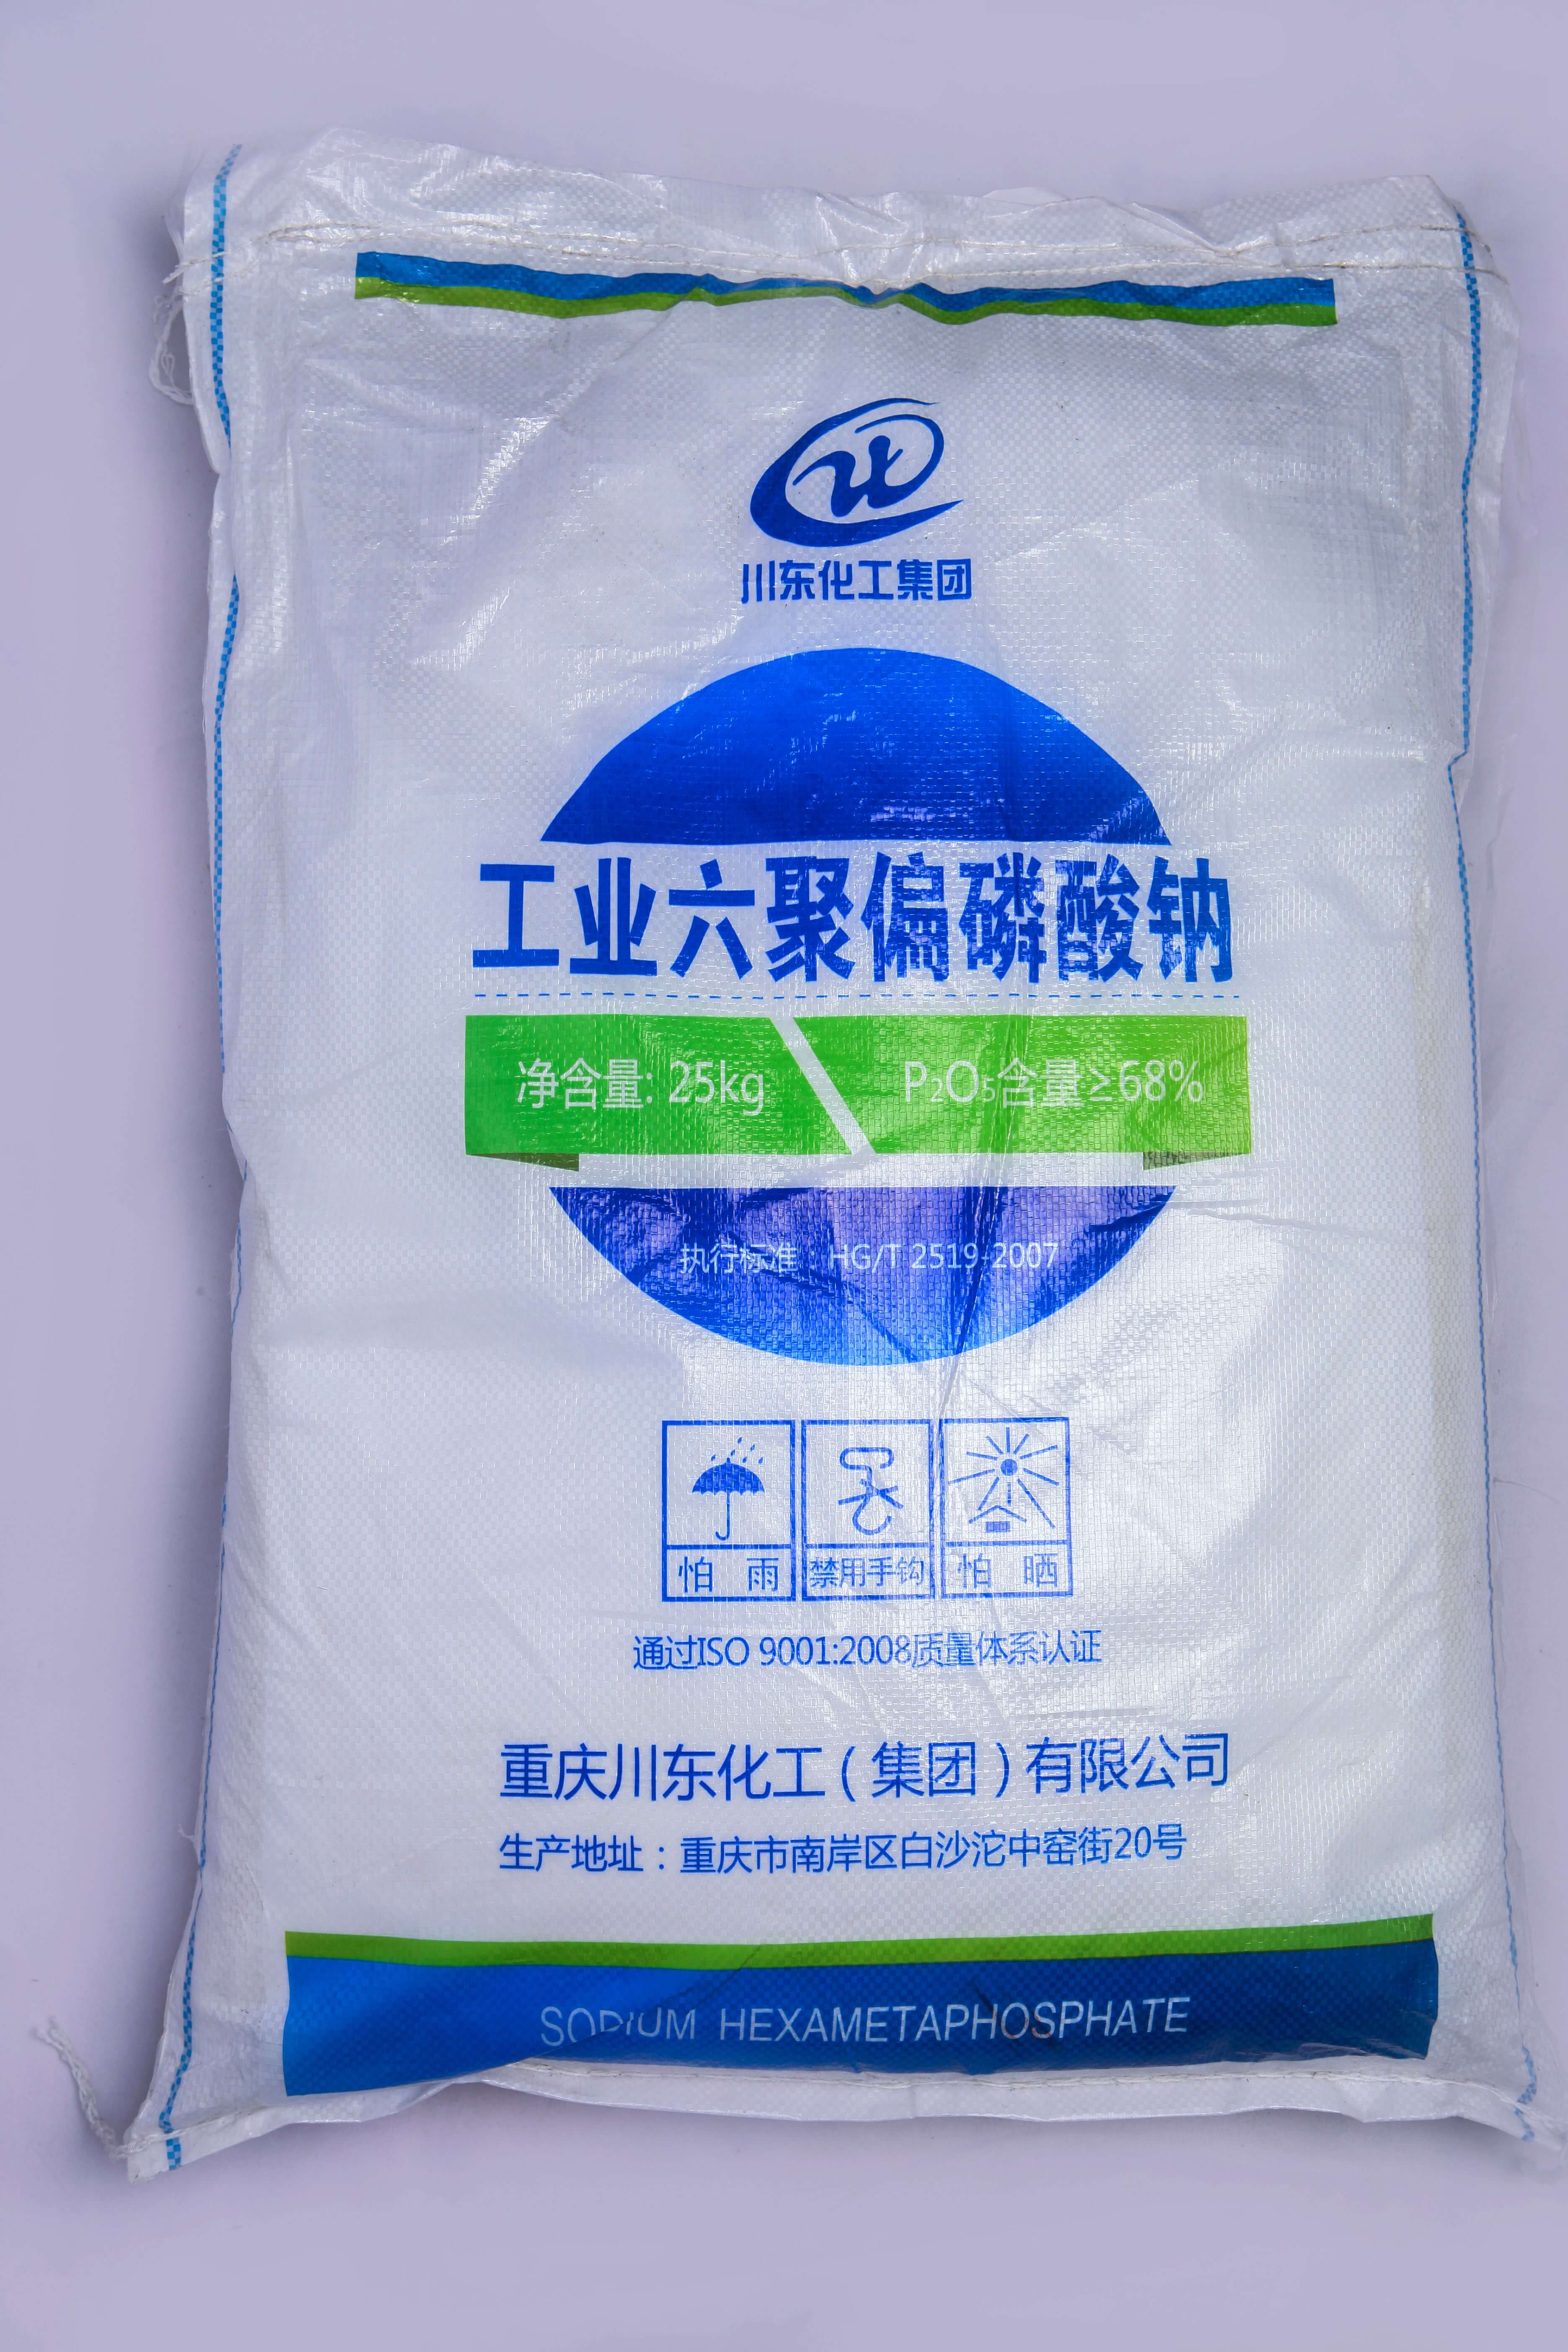 佛山三聚磷酸鈉代理商認為黃磷價格的持續上漲，主要受幾個方面的因素影響